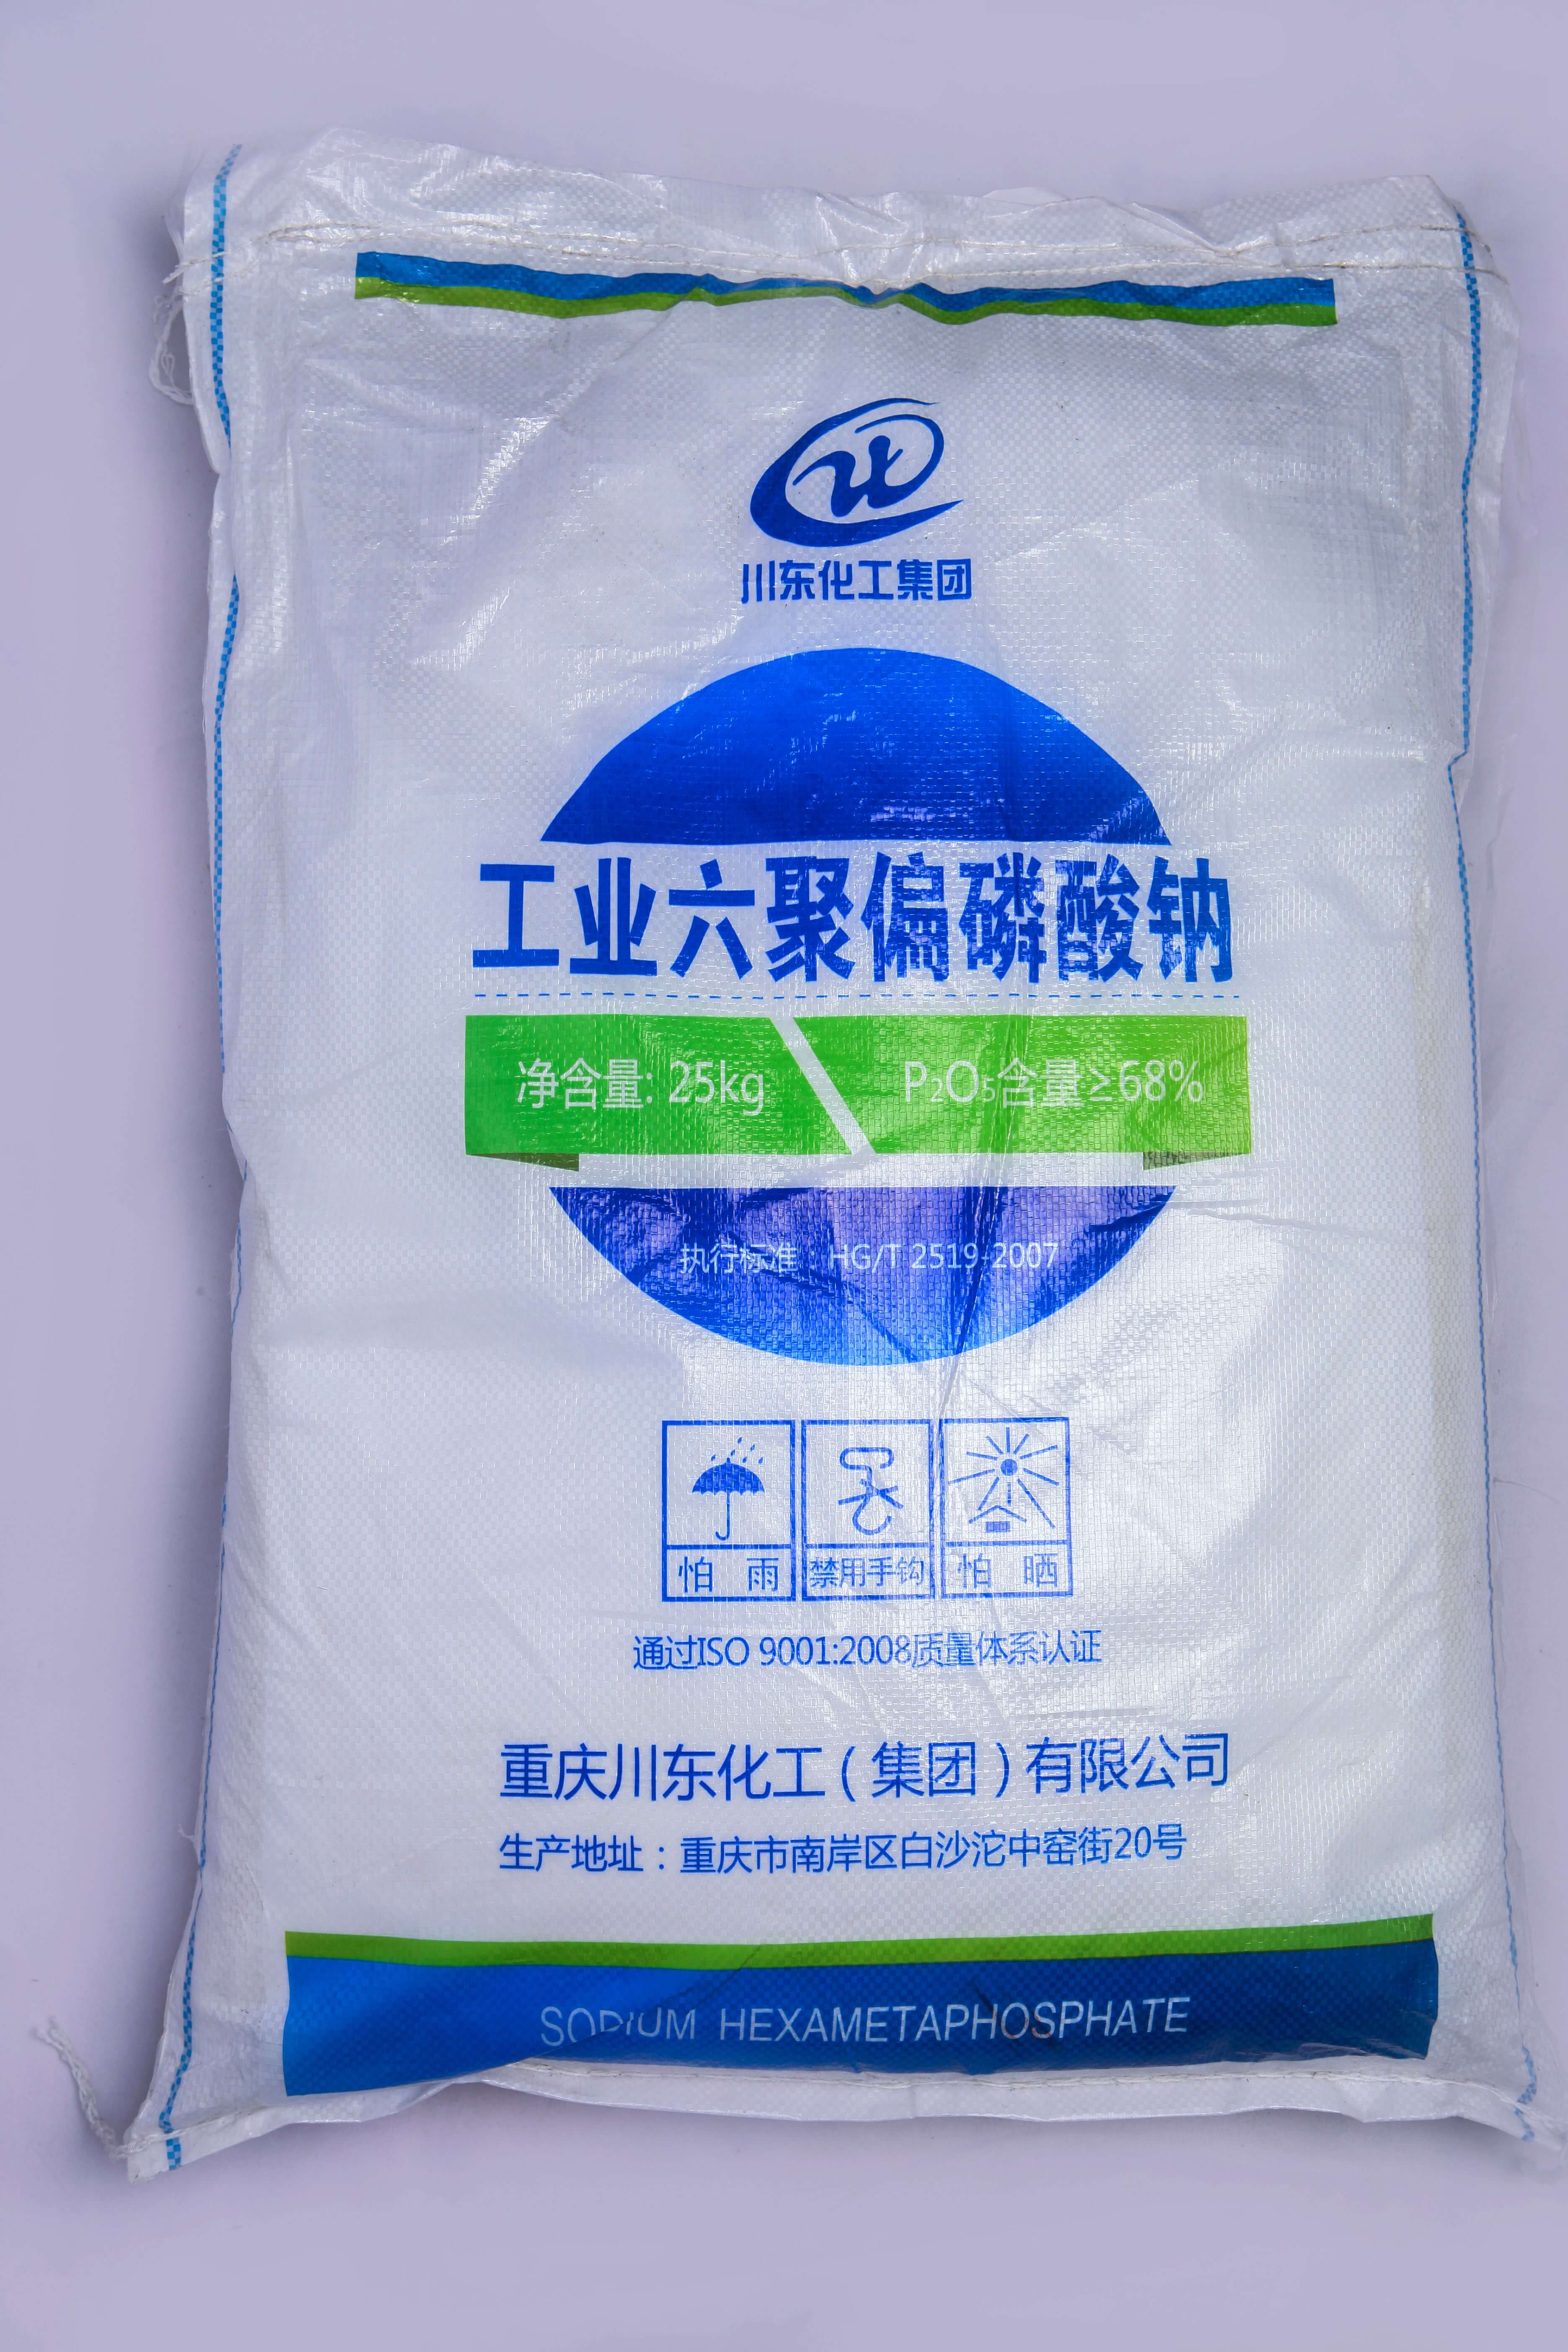 佛山三聚磷酸鈉代理商認為黃磷價格的持續上漲，主要受幾個方面的因素影響